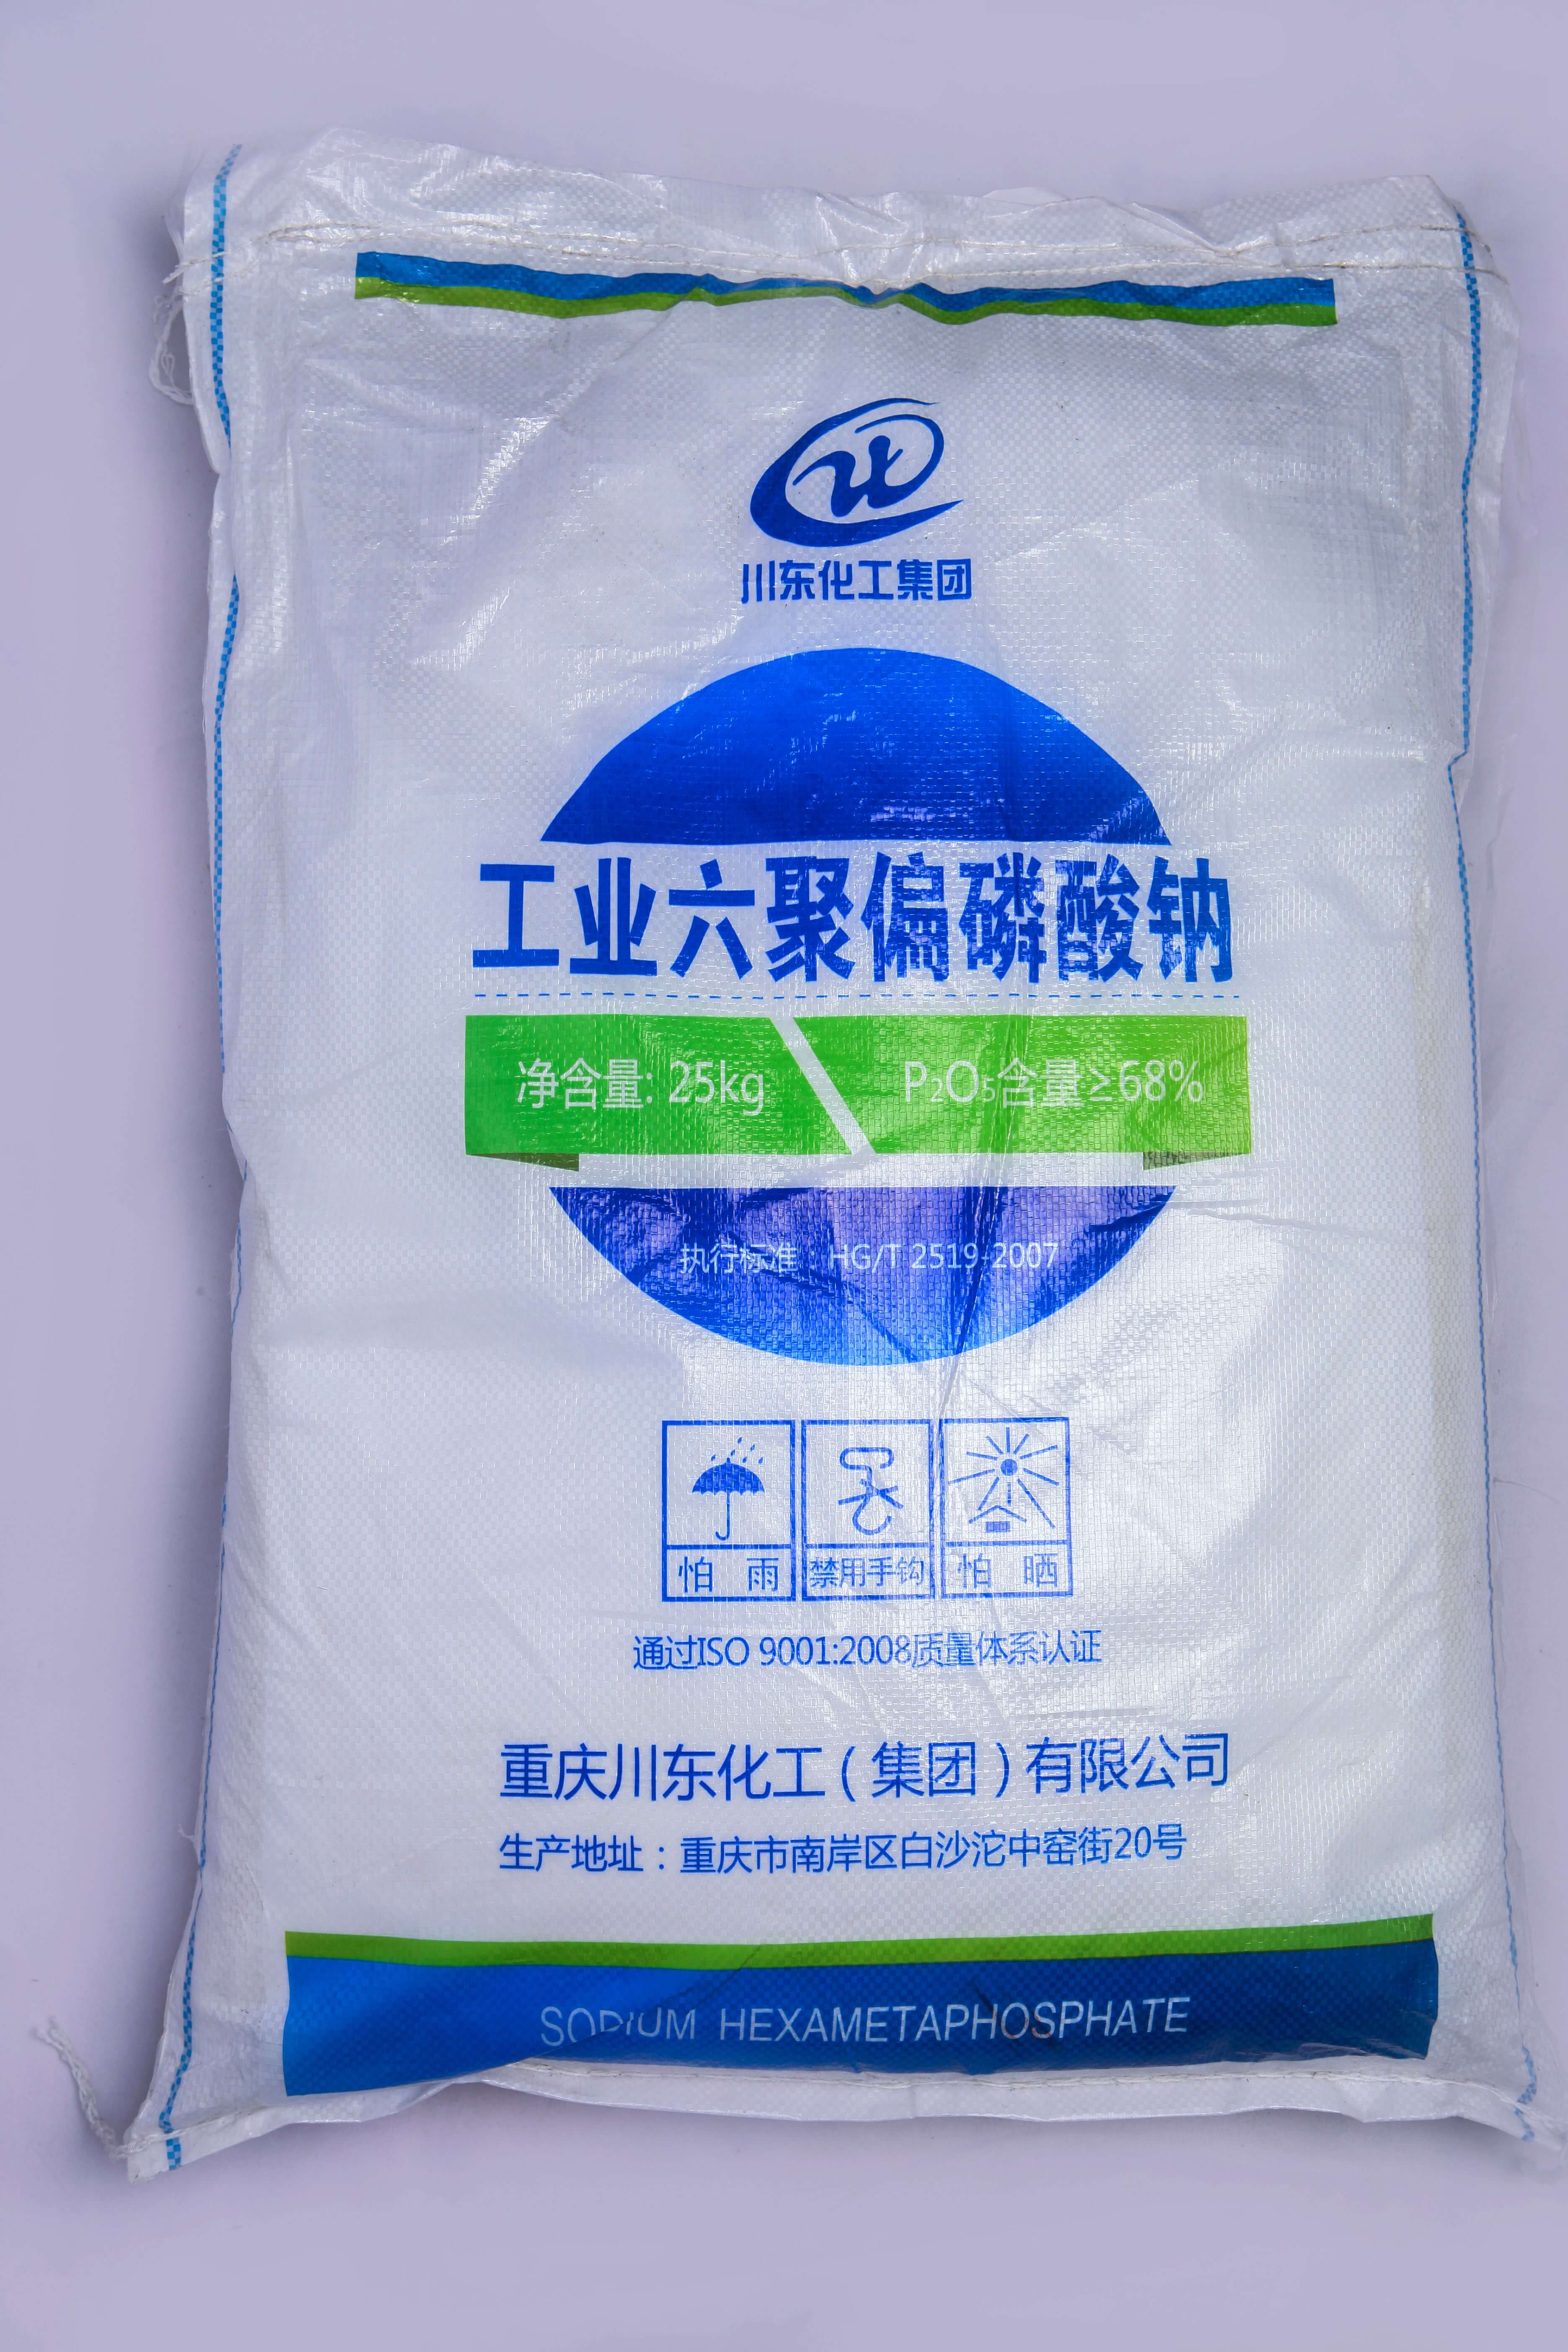 佛山三聚磷酸鈉代理商認為黃磷價格的持續上漲，主要受幾個方面的因素影響